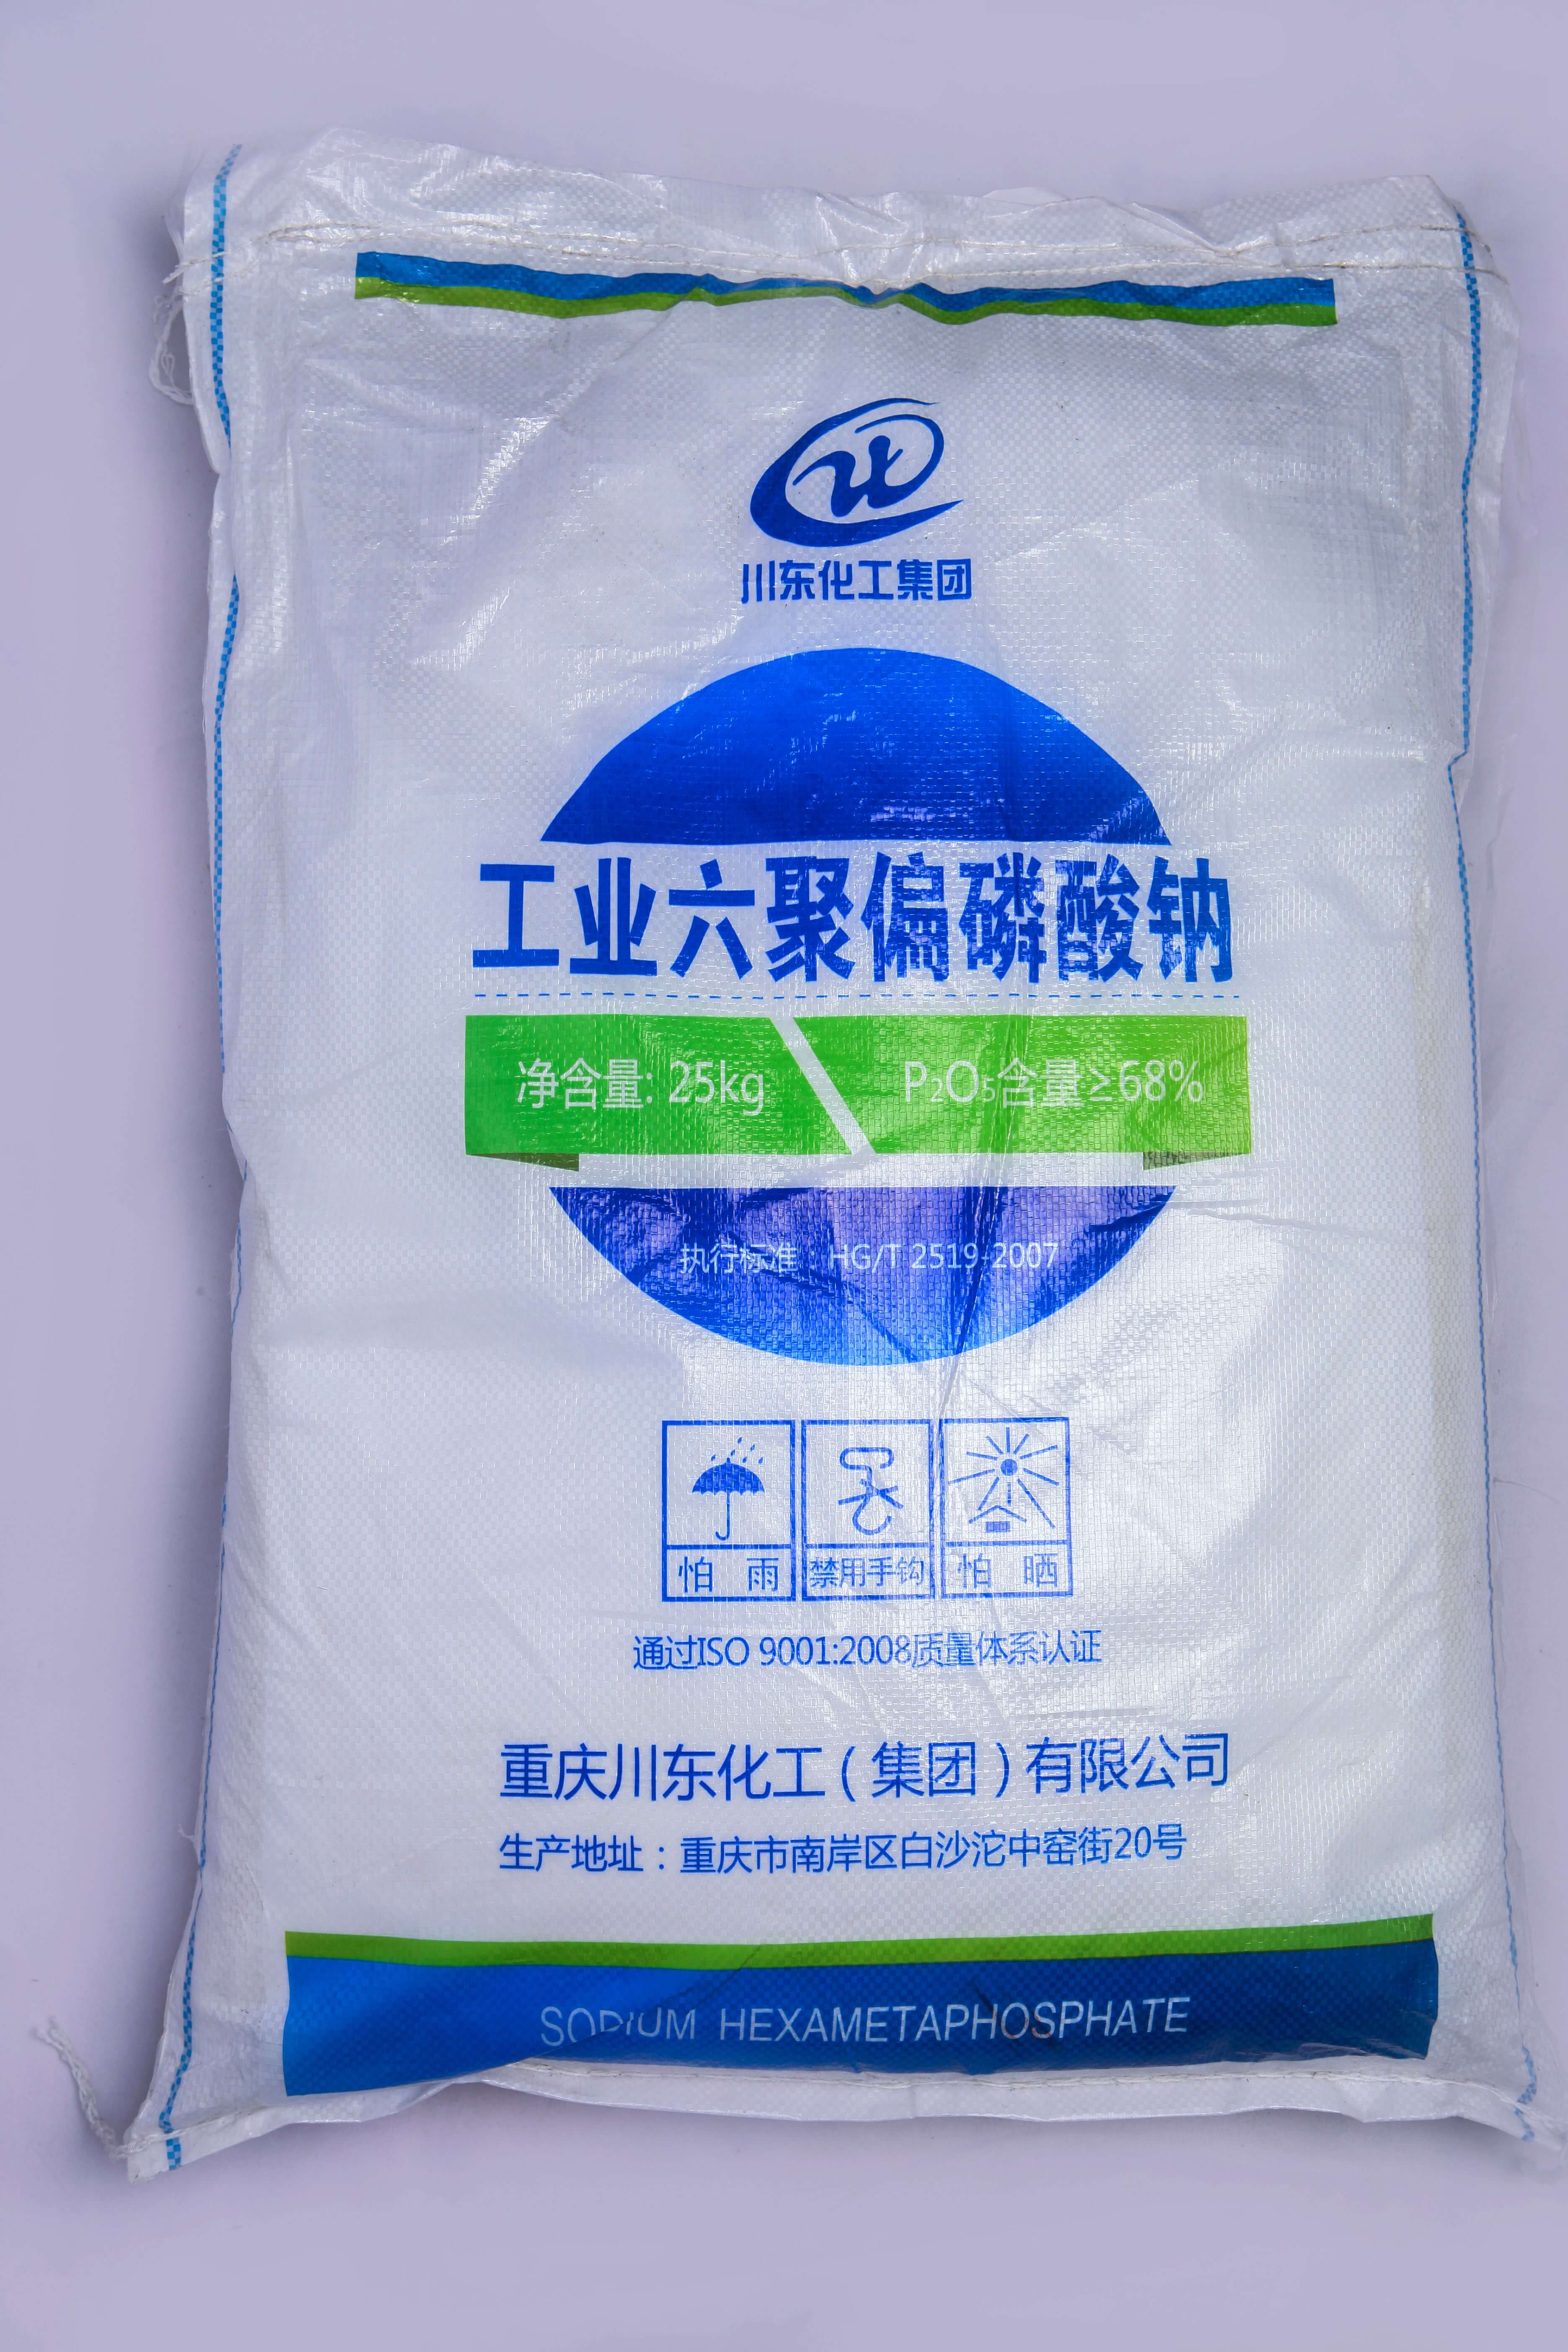 佛山三聚磷酸鈉代理商認為黃磷價格的持續上漲，主要受幾個方面的因素影響